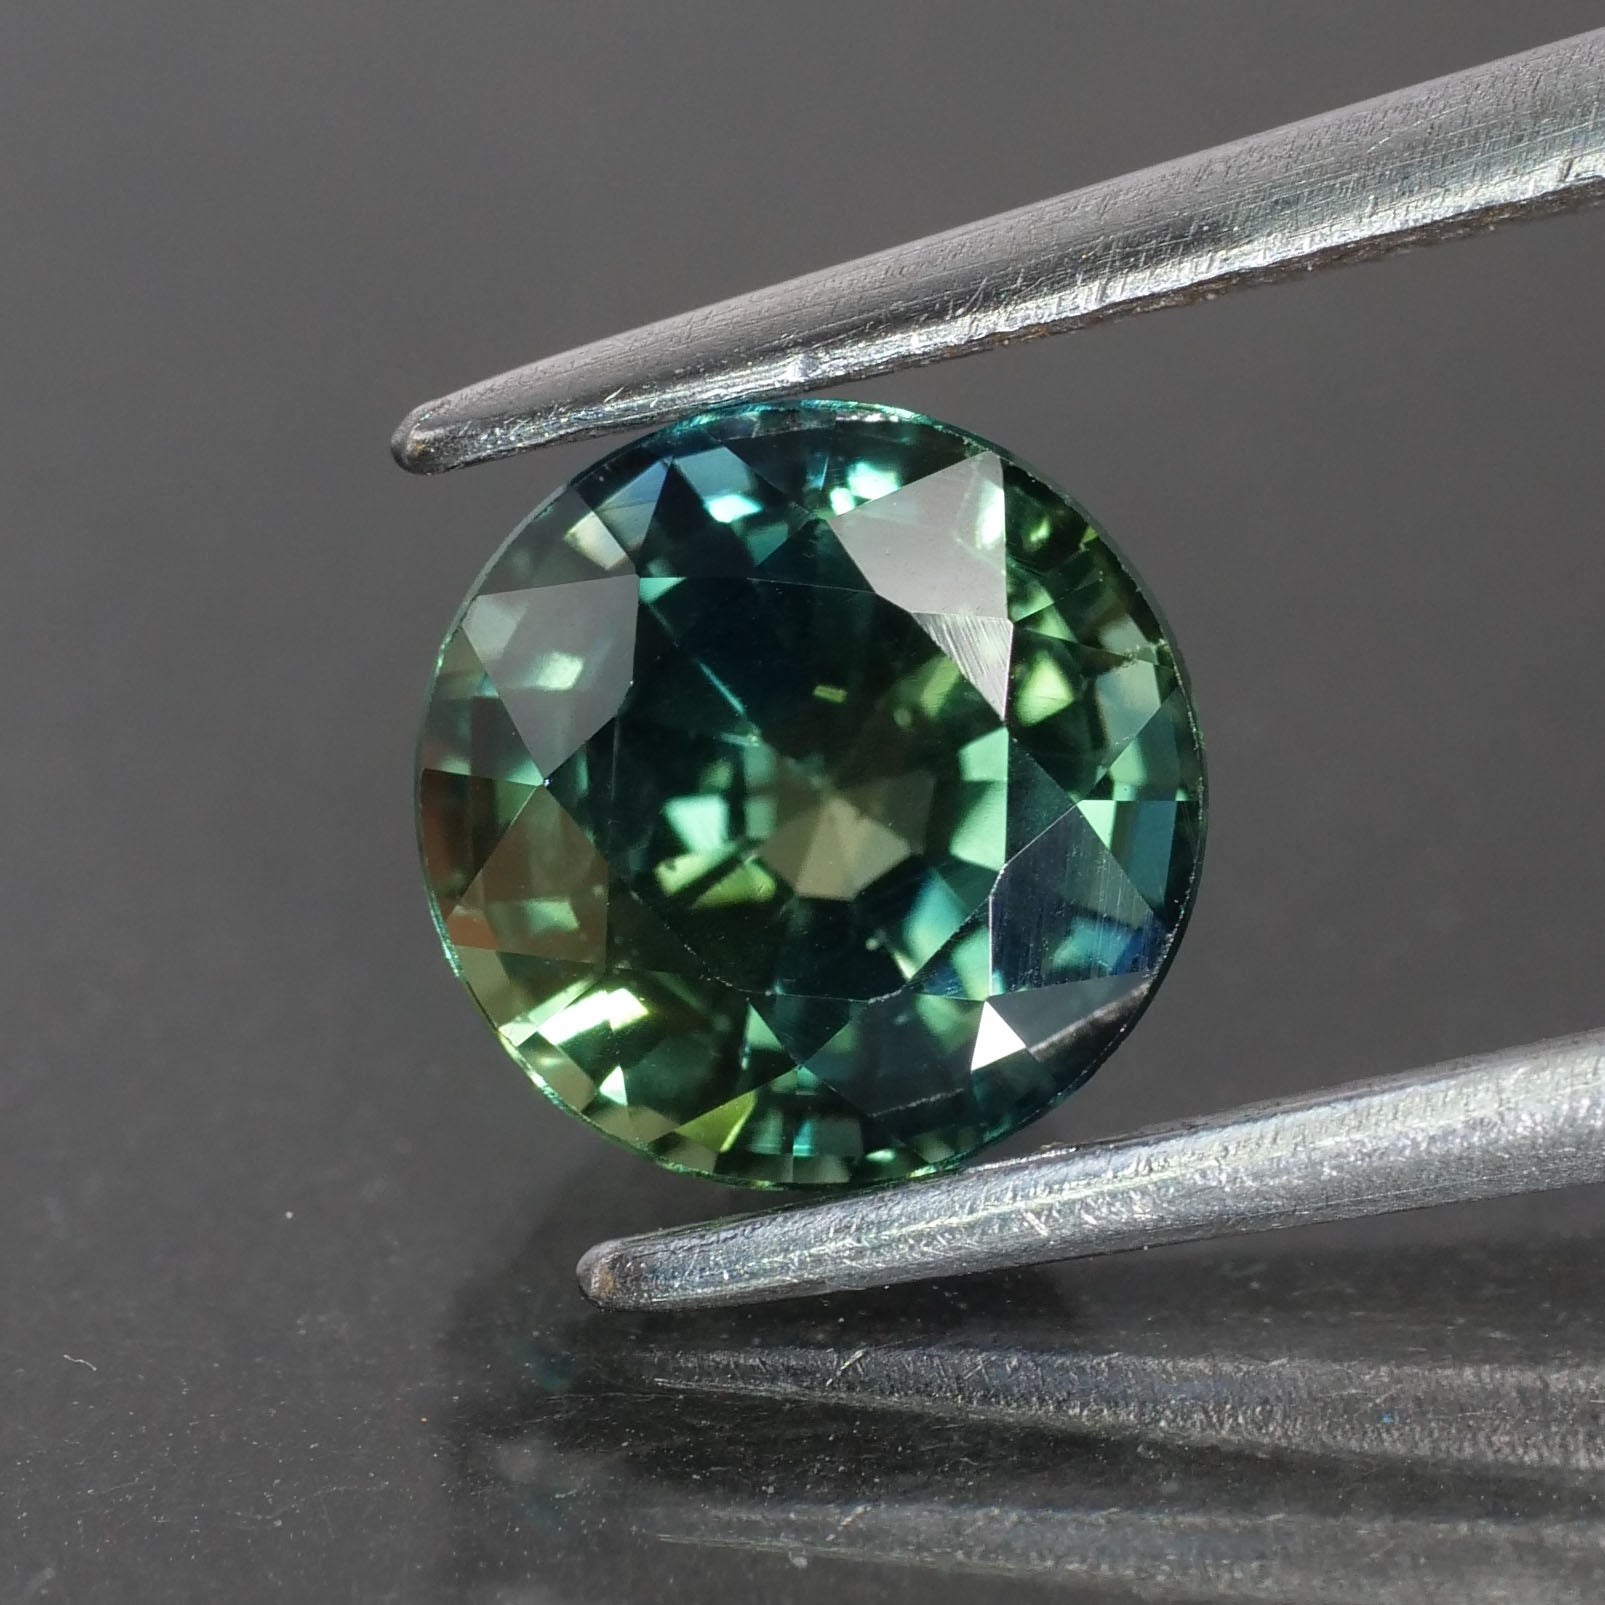 Sapphire Teal | IGI certified | natural, greenish blue, round cut 6.5 mm, 1.44ct - Eden Garden Jewelry™